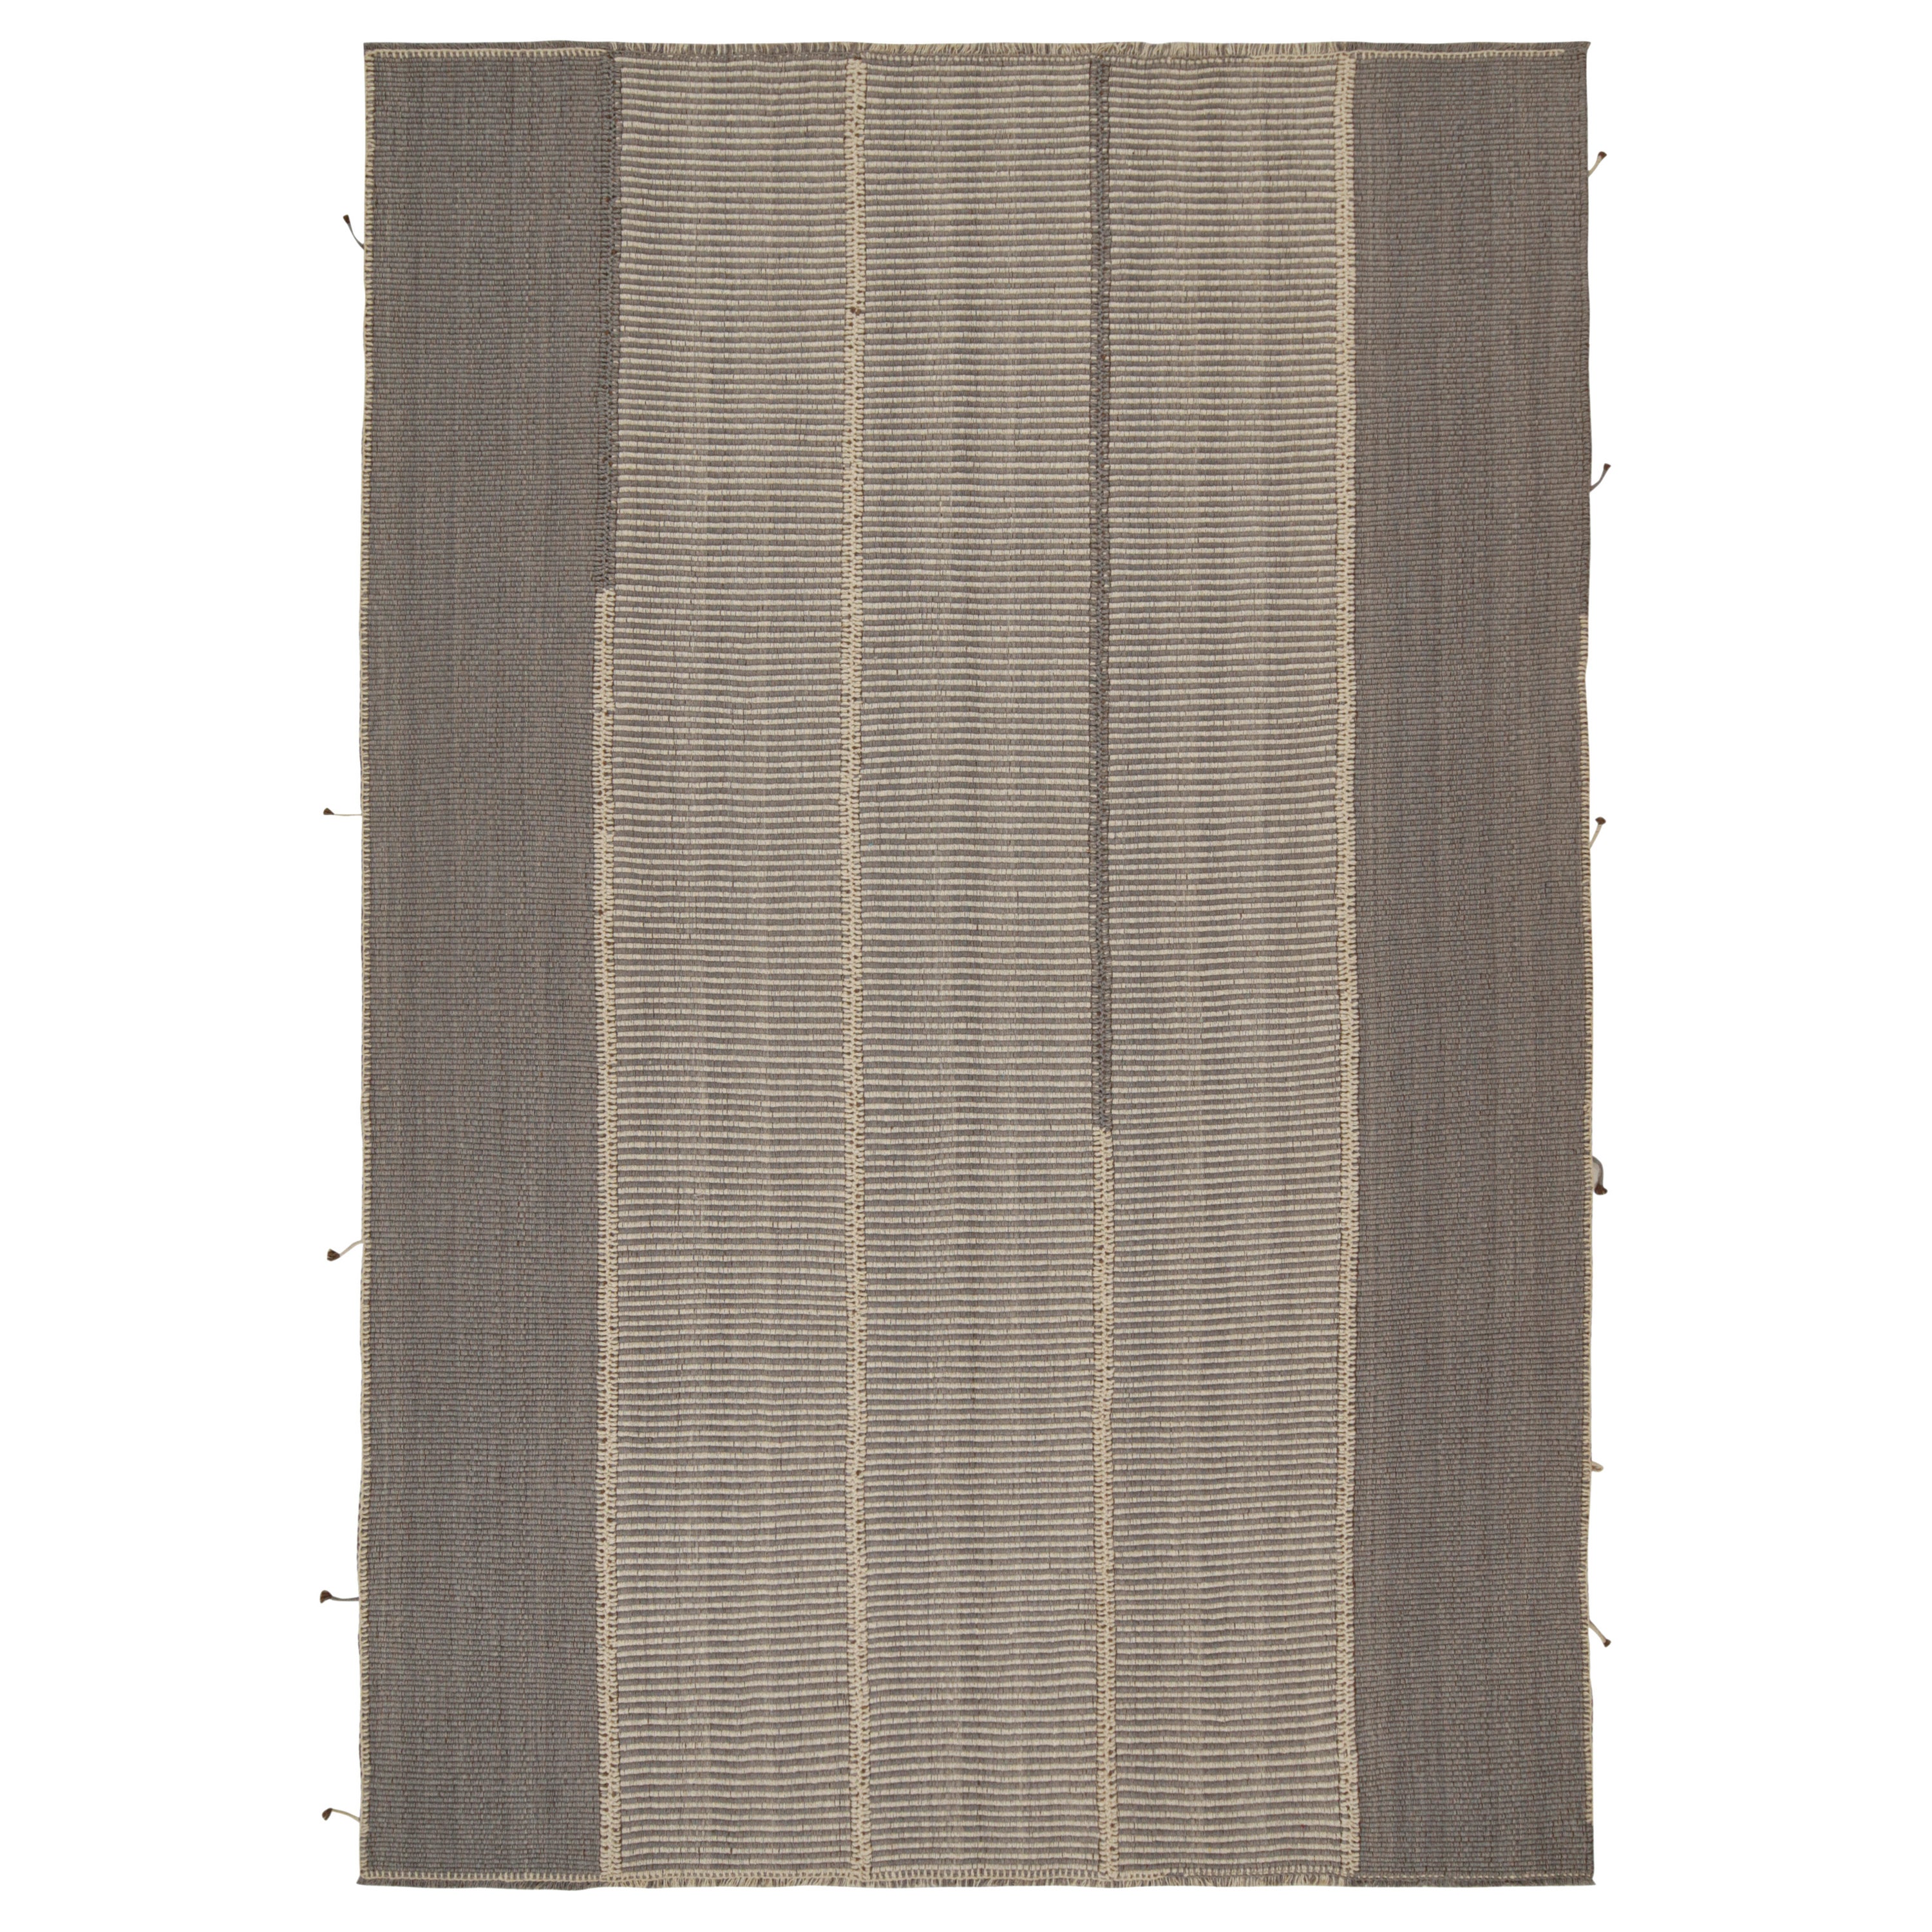 Rug & Kilim's Contemporary Kilim in grauen und beigen Streifen mit braunen Akzenten